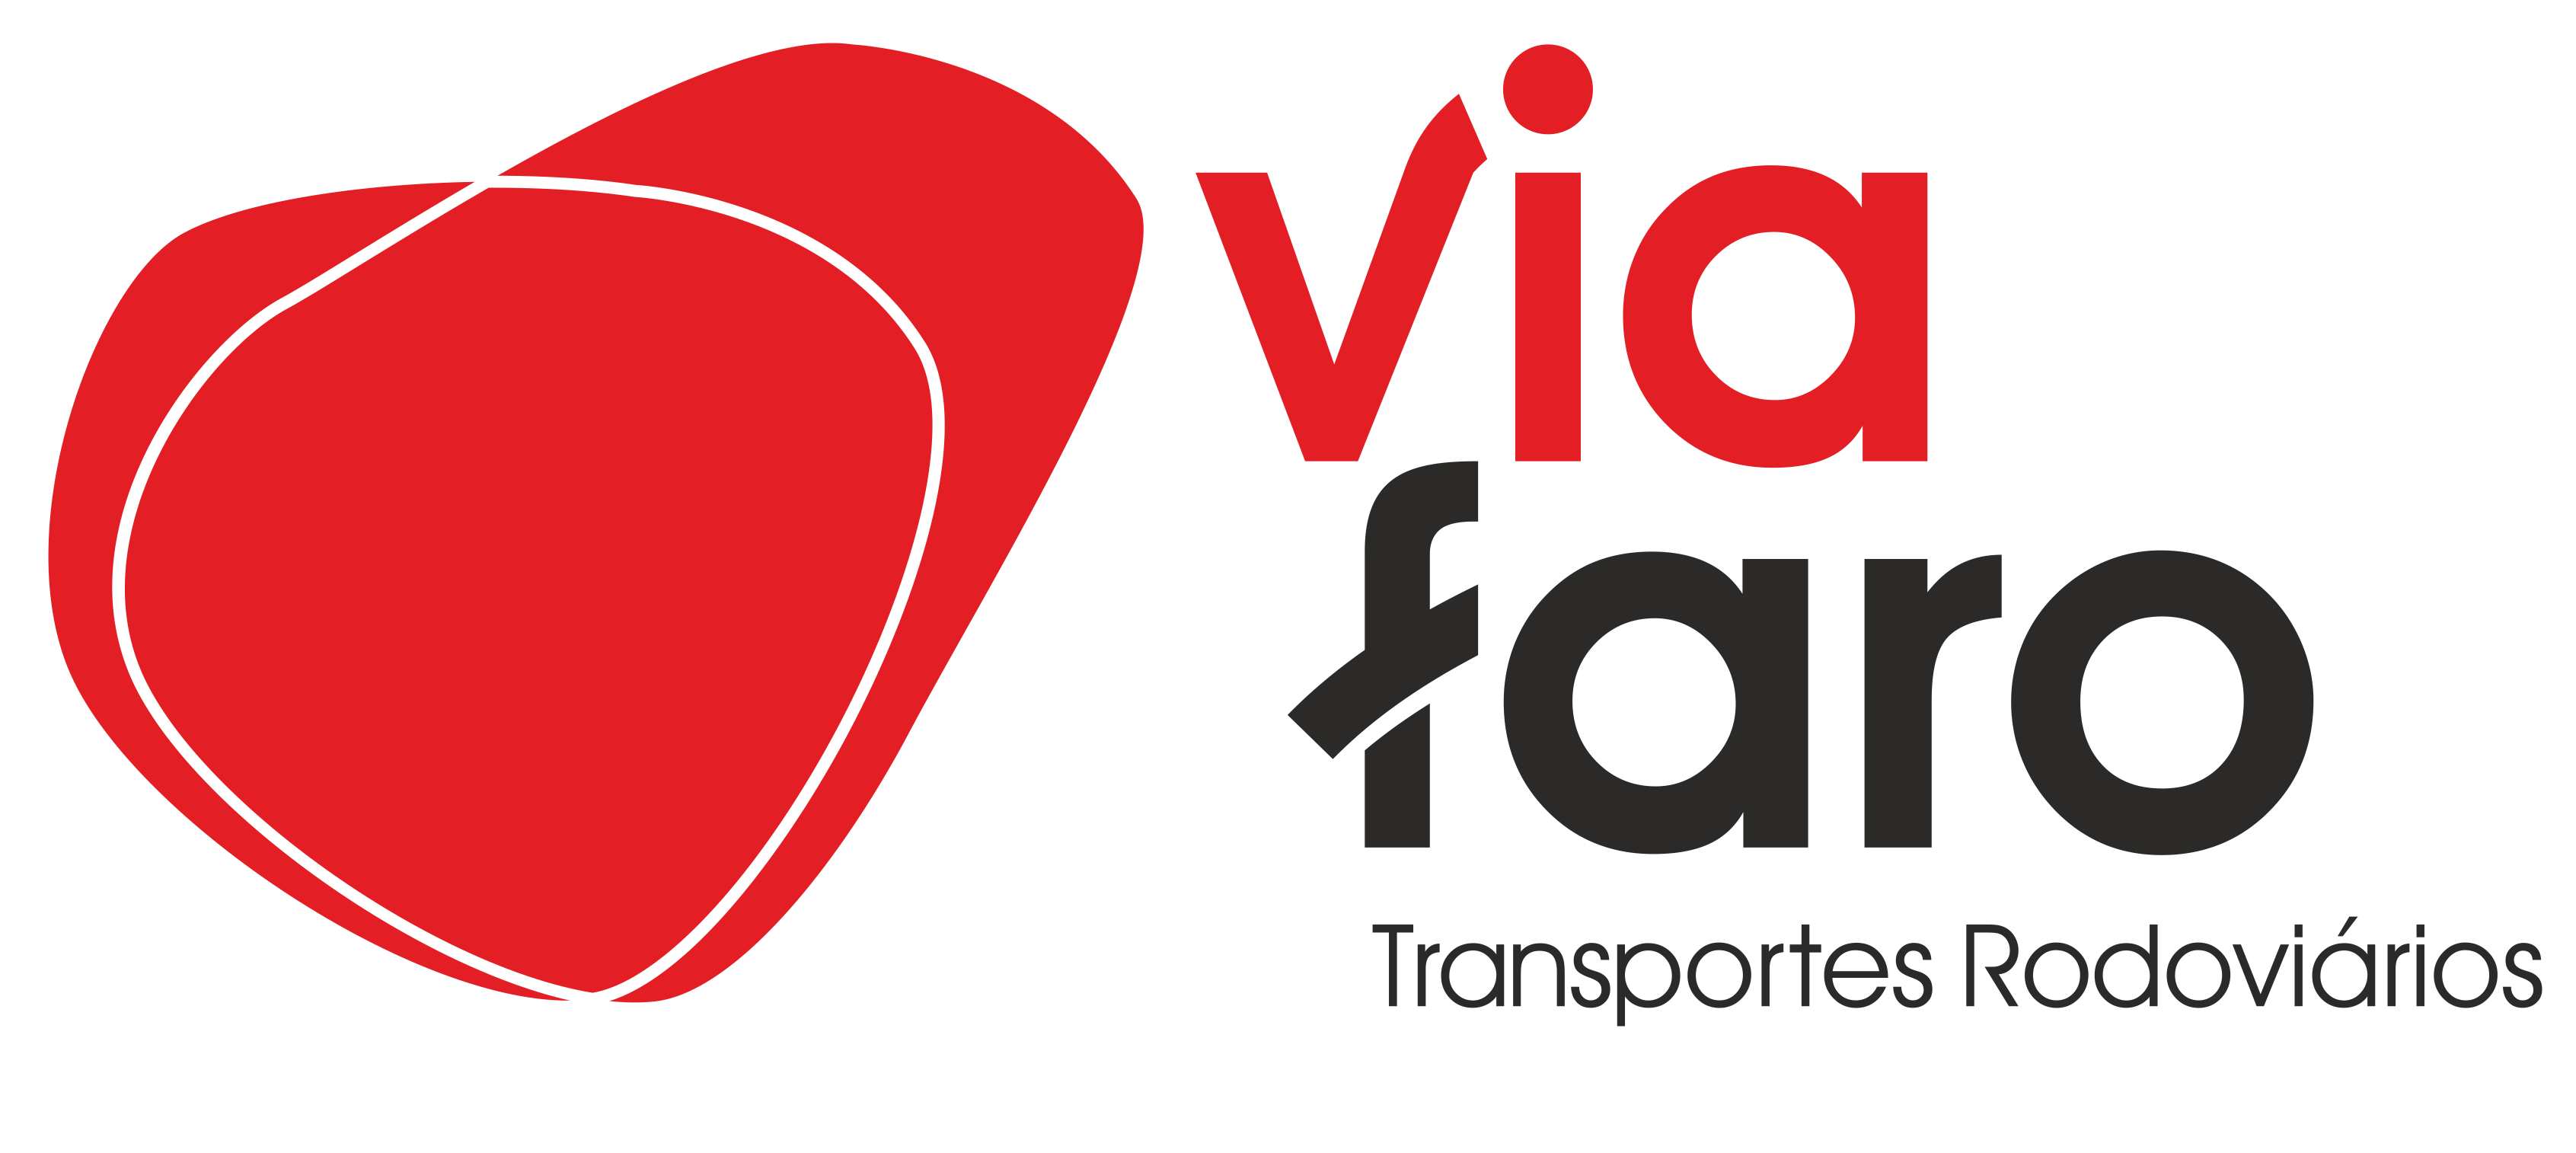 Via Faro Logo